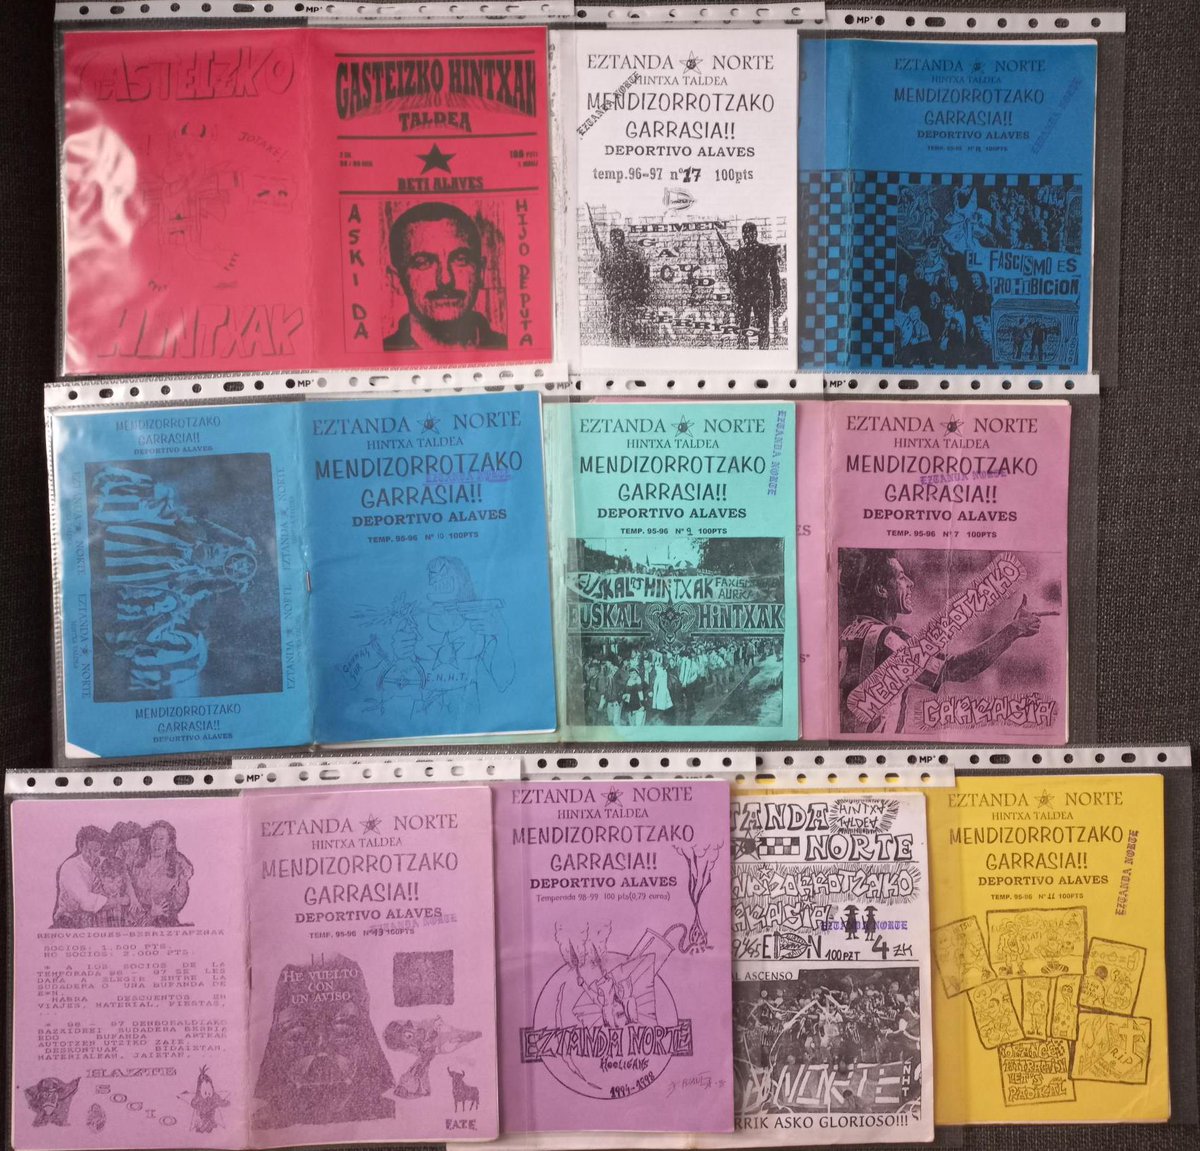 Fanzines de Eztanda Norte y Gasteizko Hintxak
La mayoría, cortesía del Sr Txarraska